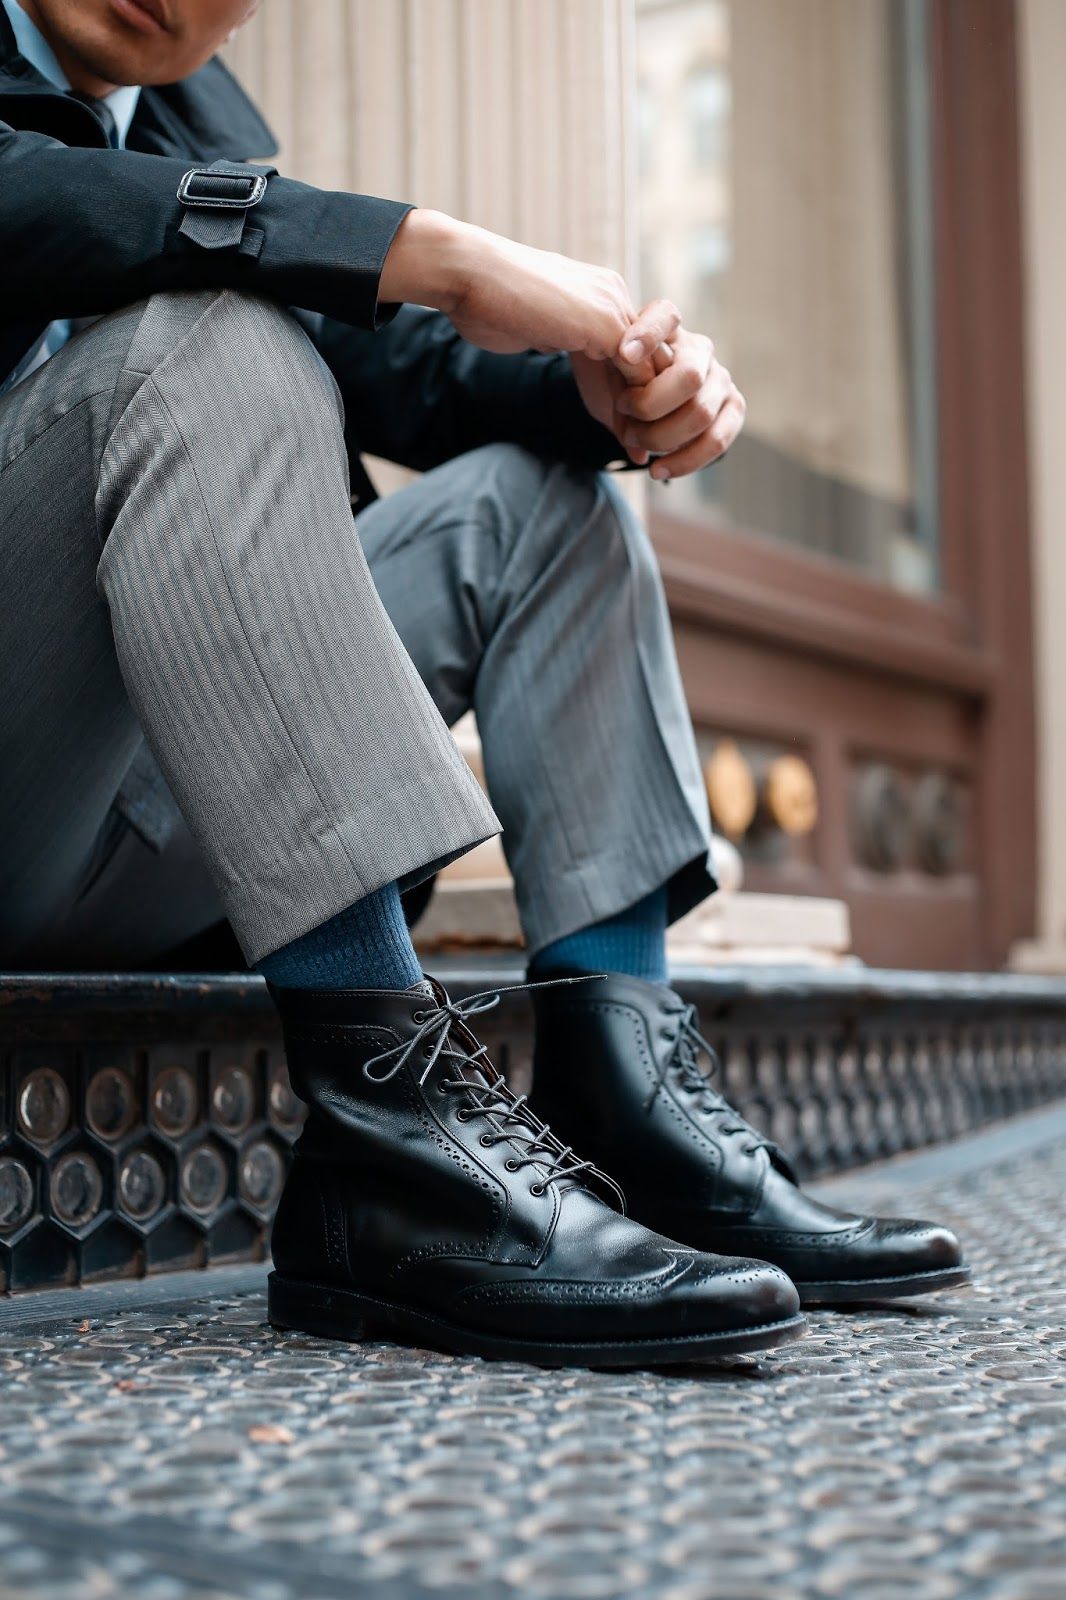 6 Best Boot Socks For Men: Smartwool 